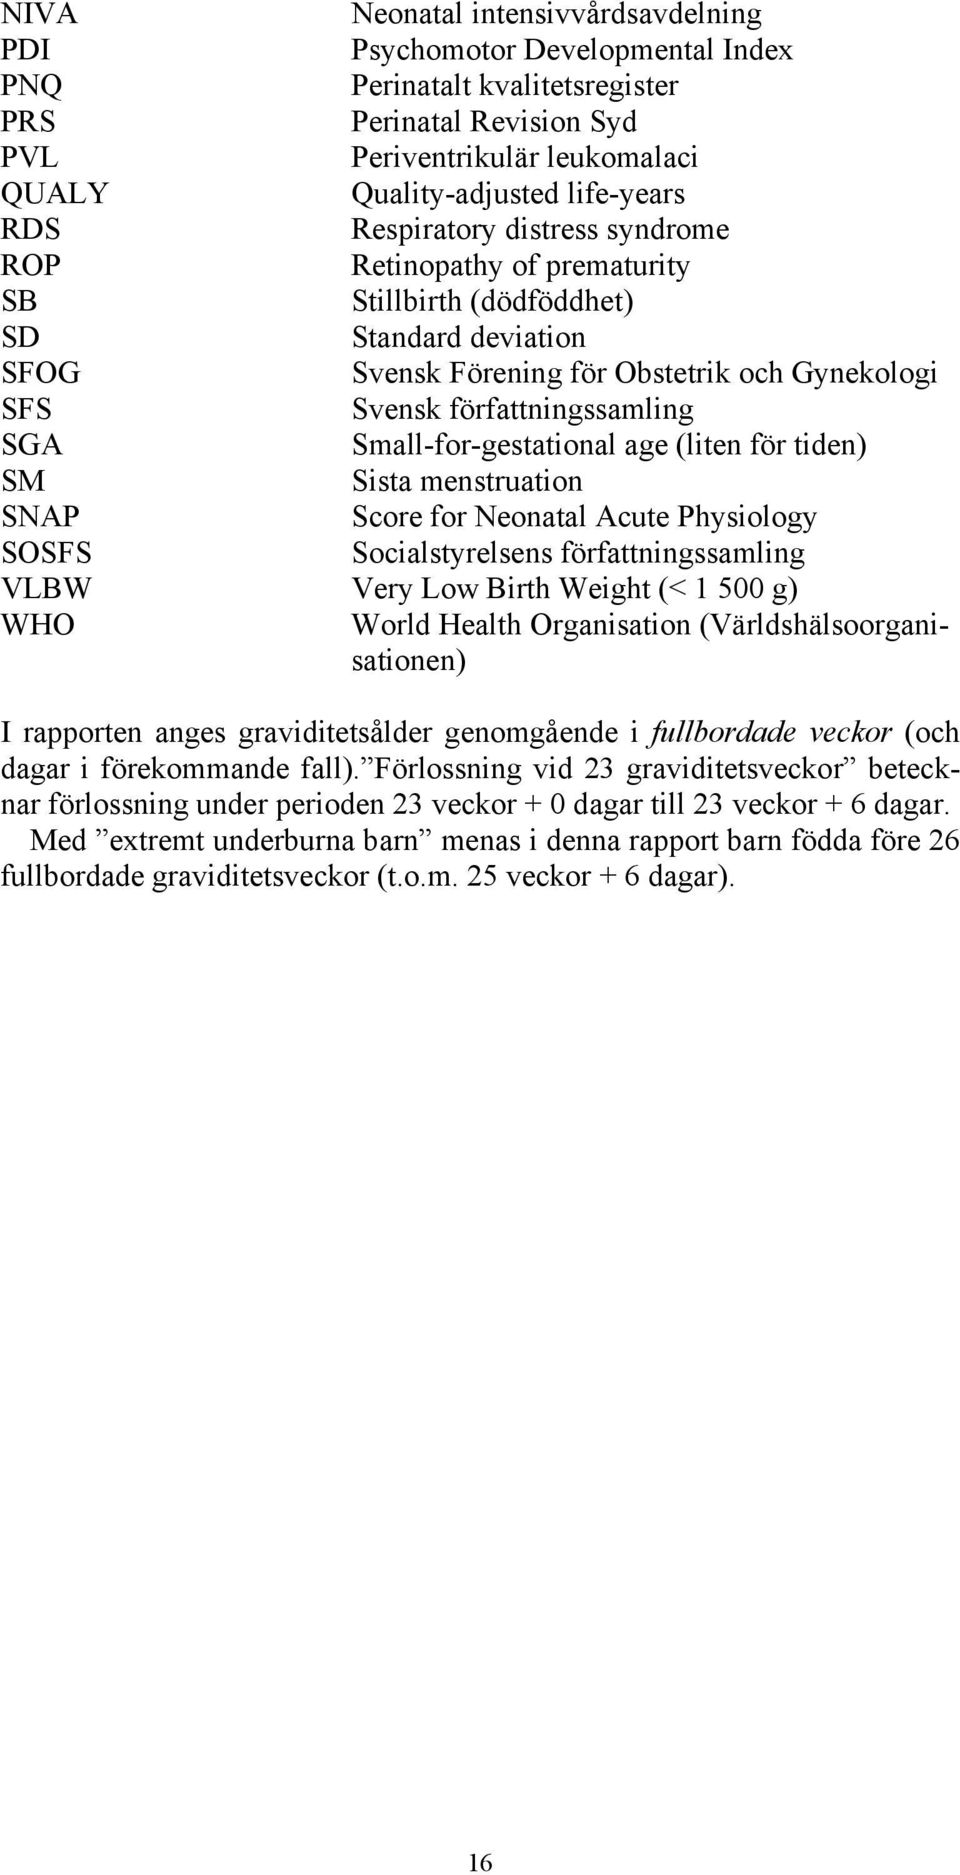 Small-for-gestational age (liten för tiden) SM Sista menstruation SNAP Score for Neonatal Acute Physiology SOSFS Socialstyrelsens författningssamling VLBW Very Low Birth Weight (< 1 500 g) WHO World